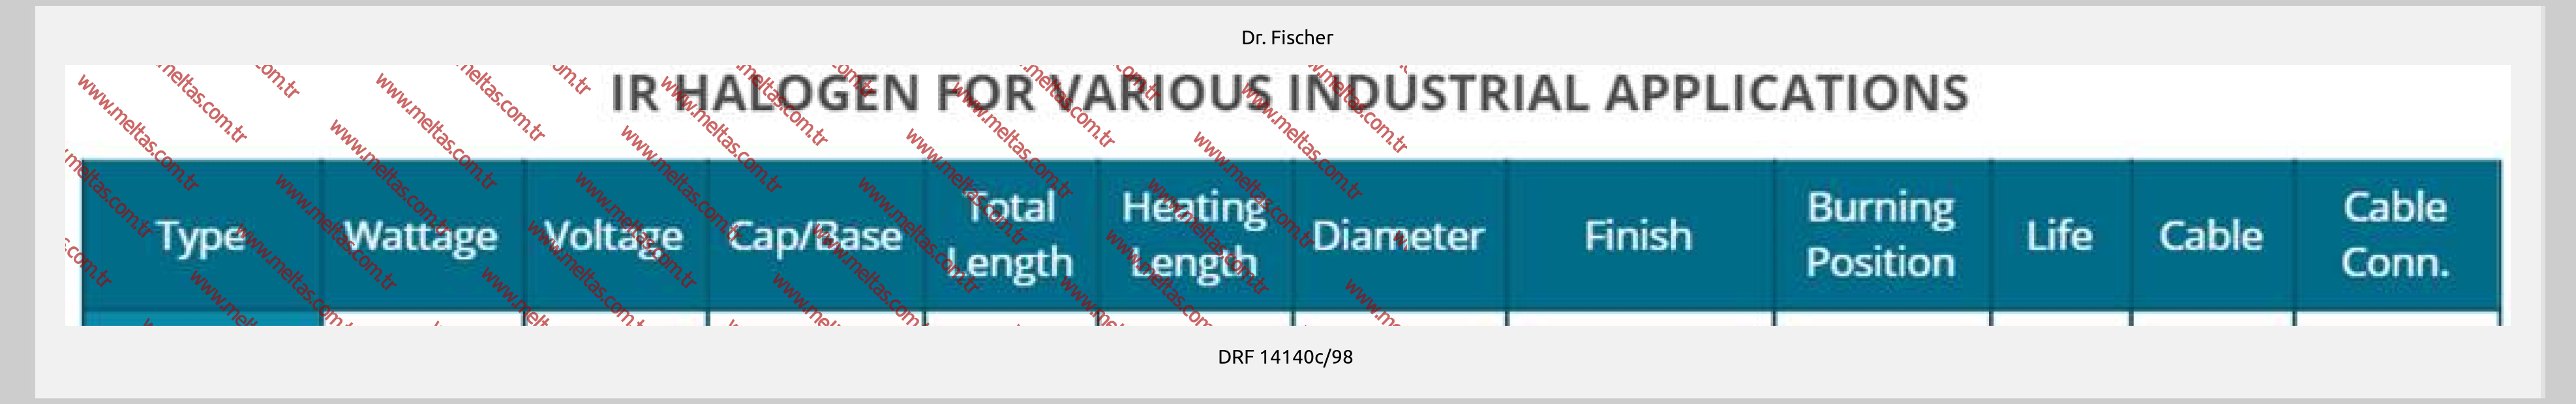 Dr. Fischer - DRF 14140c/98 